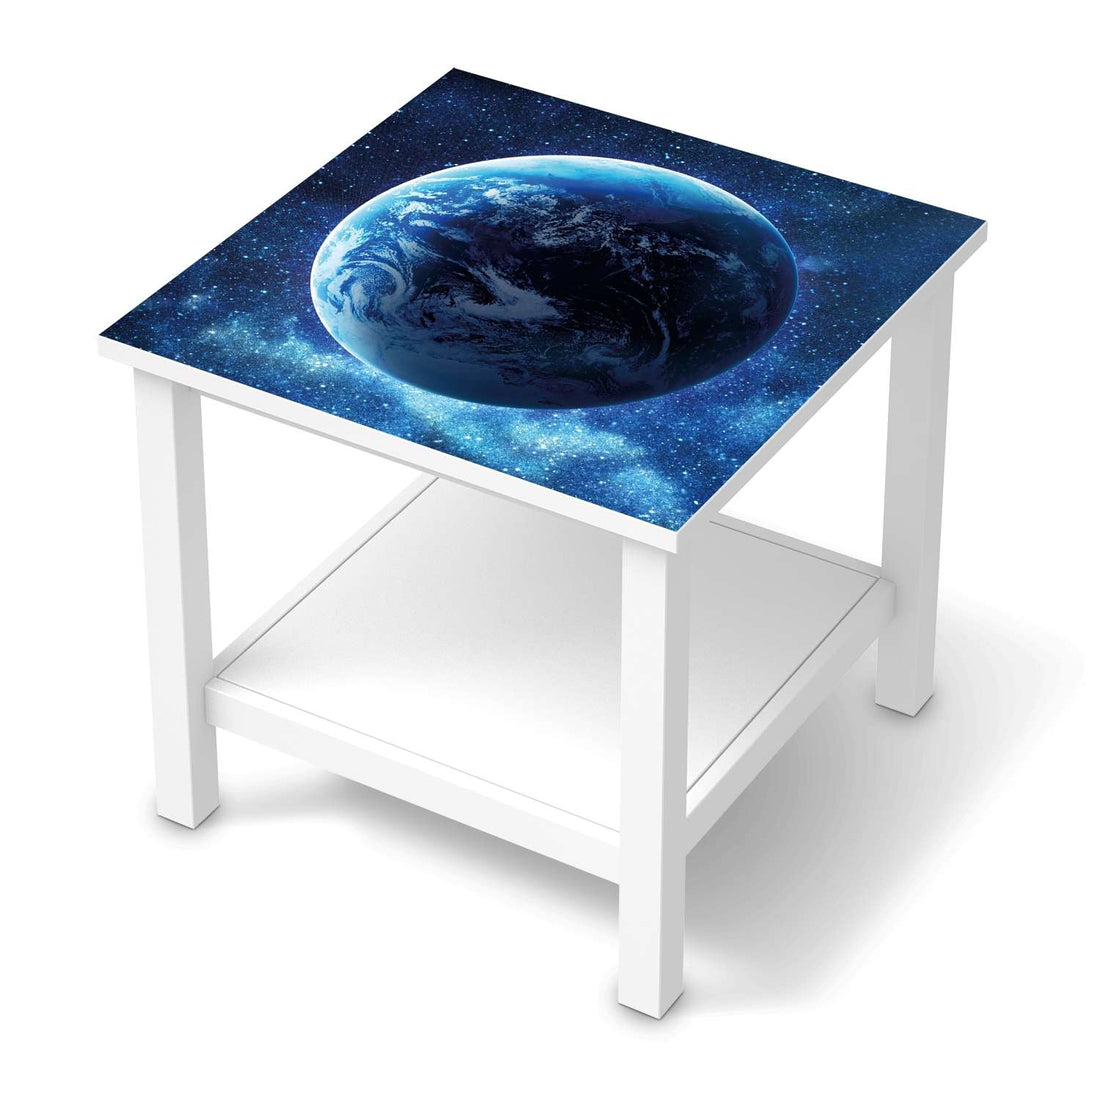 Möbel Klebefolie Planet Blue - IKEA Hemnes Beistelltisch 55x55 cm  - weiss